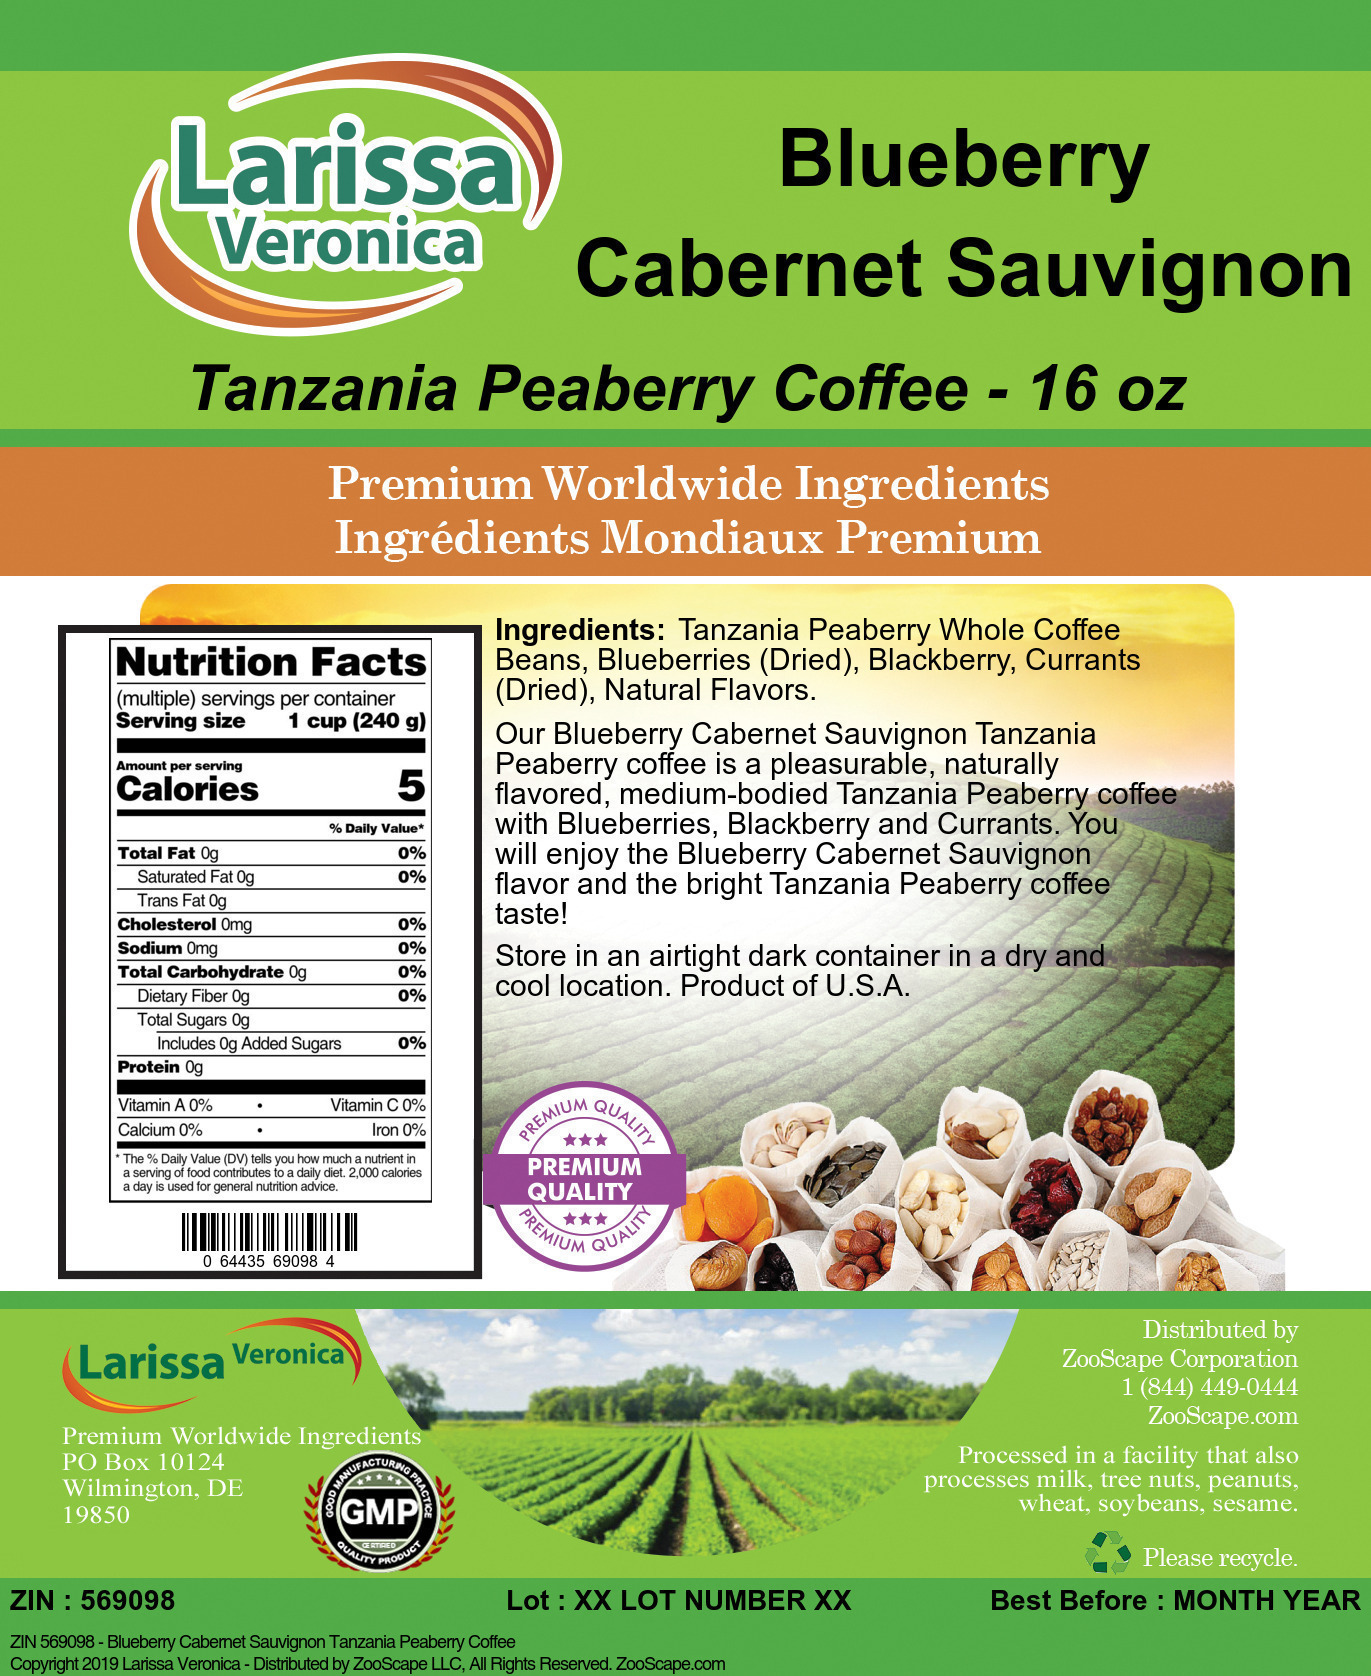 Blueberry Cabernet Sauvignon Tanzania Peaberry Coffee - Label